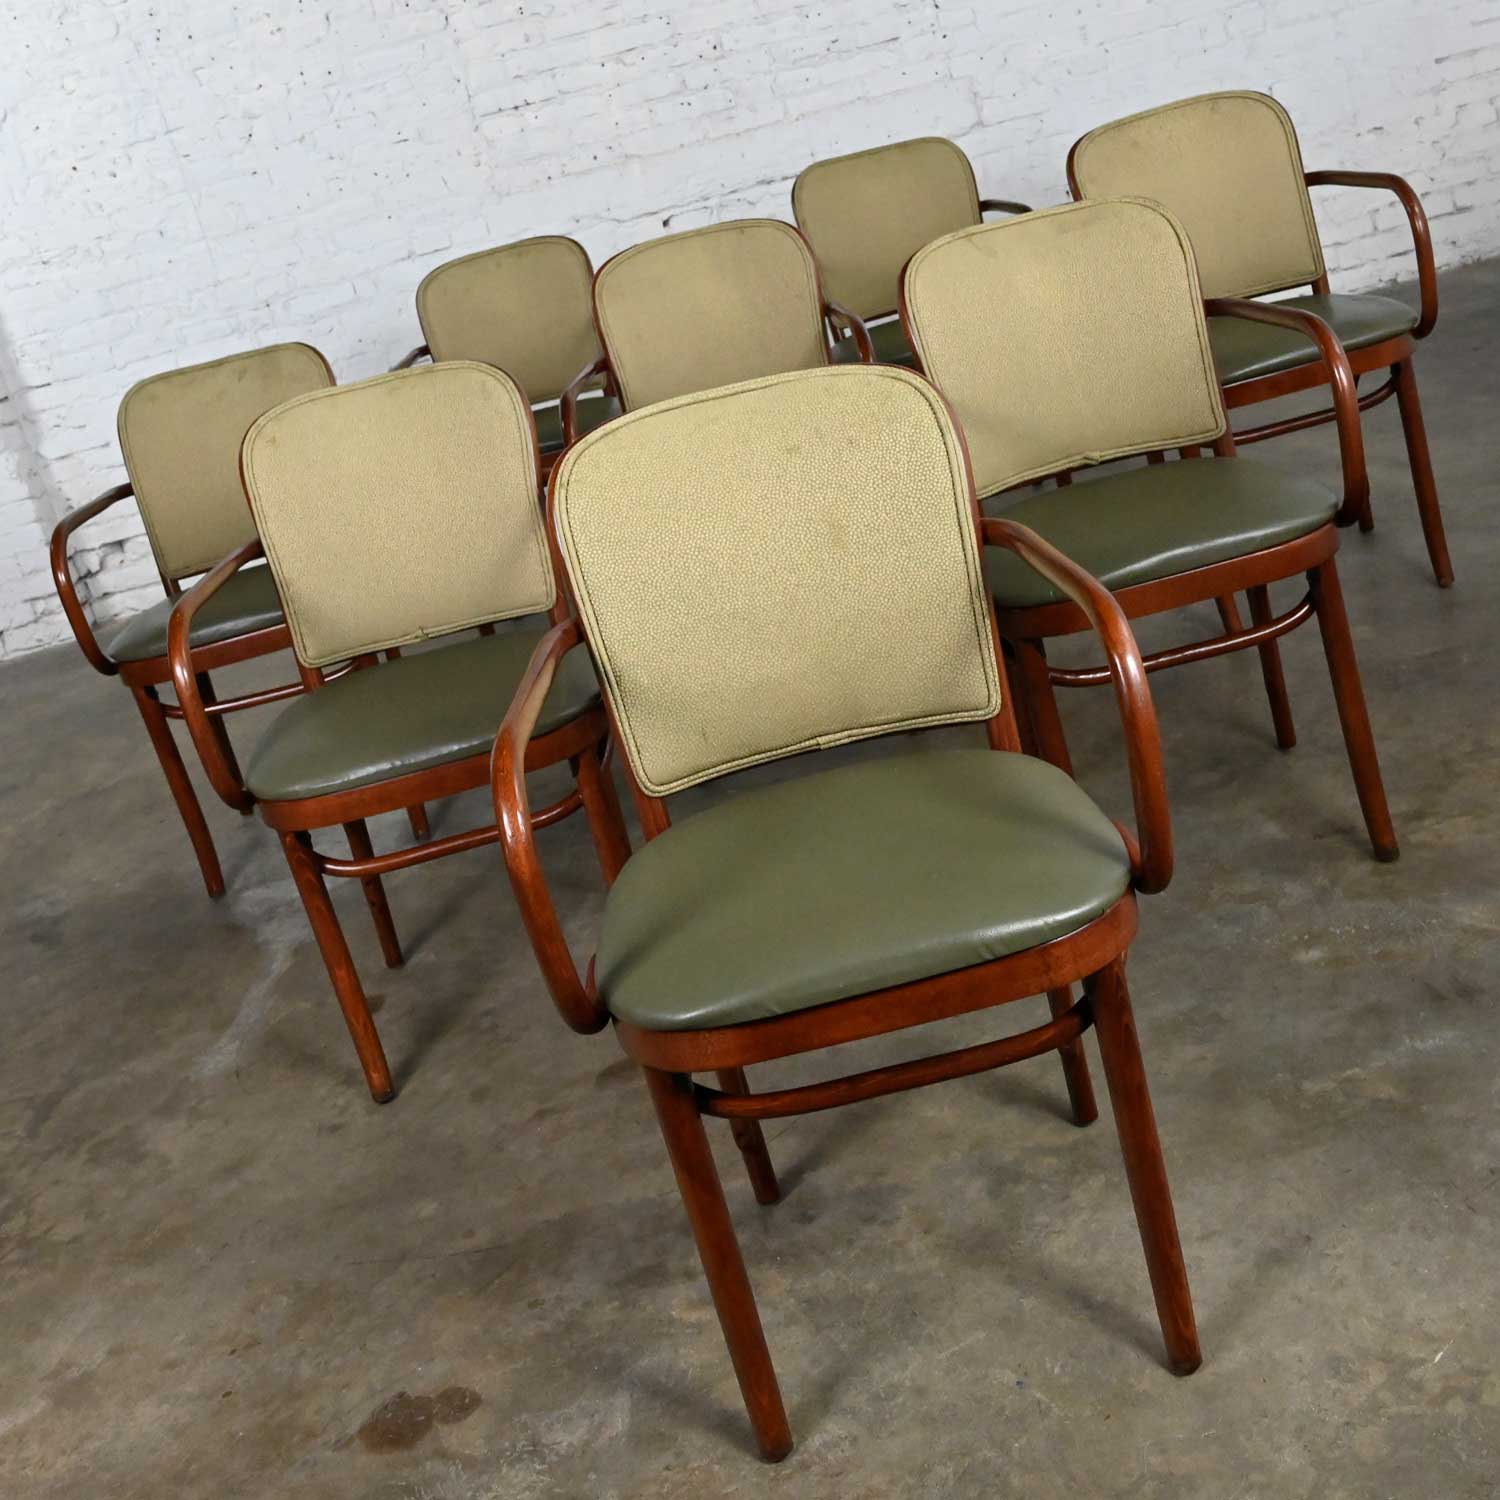 Vintage Bauhaus Oak Bentwood Josef Hoffman Prague 811 Armchairs by Thonet 30 Selling Separately